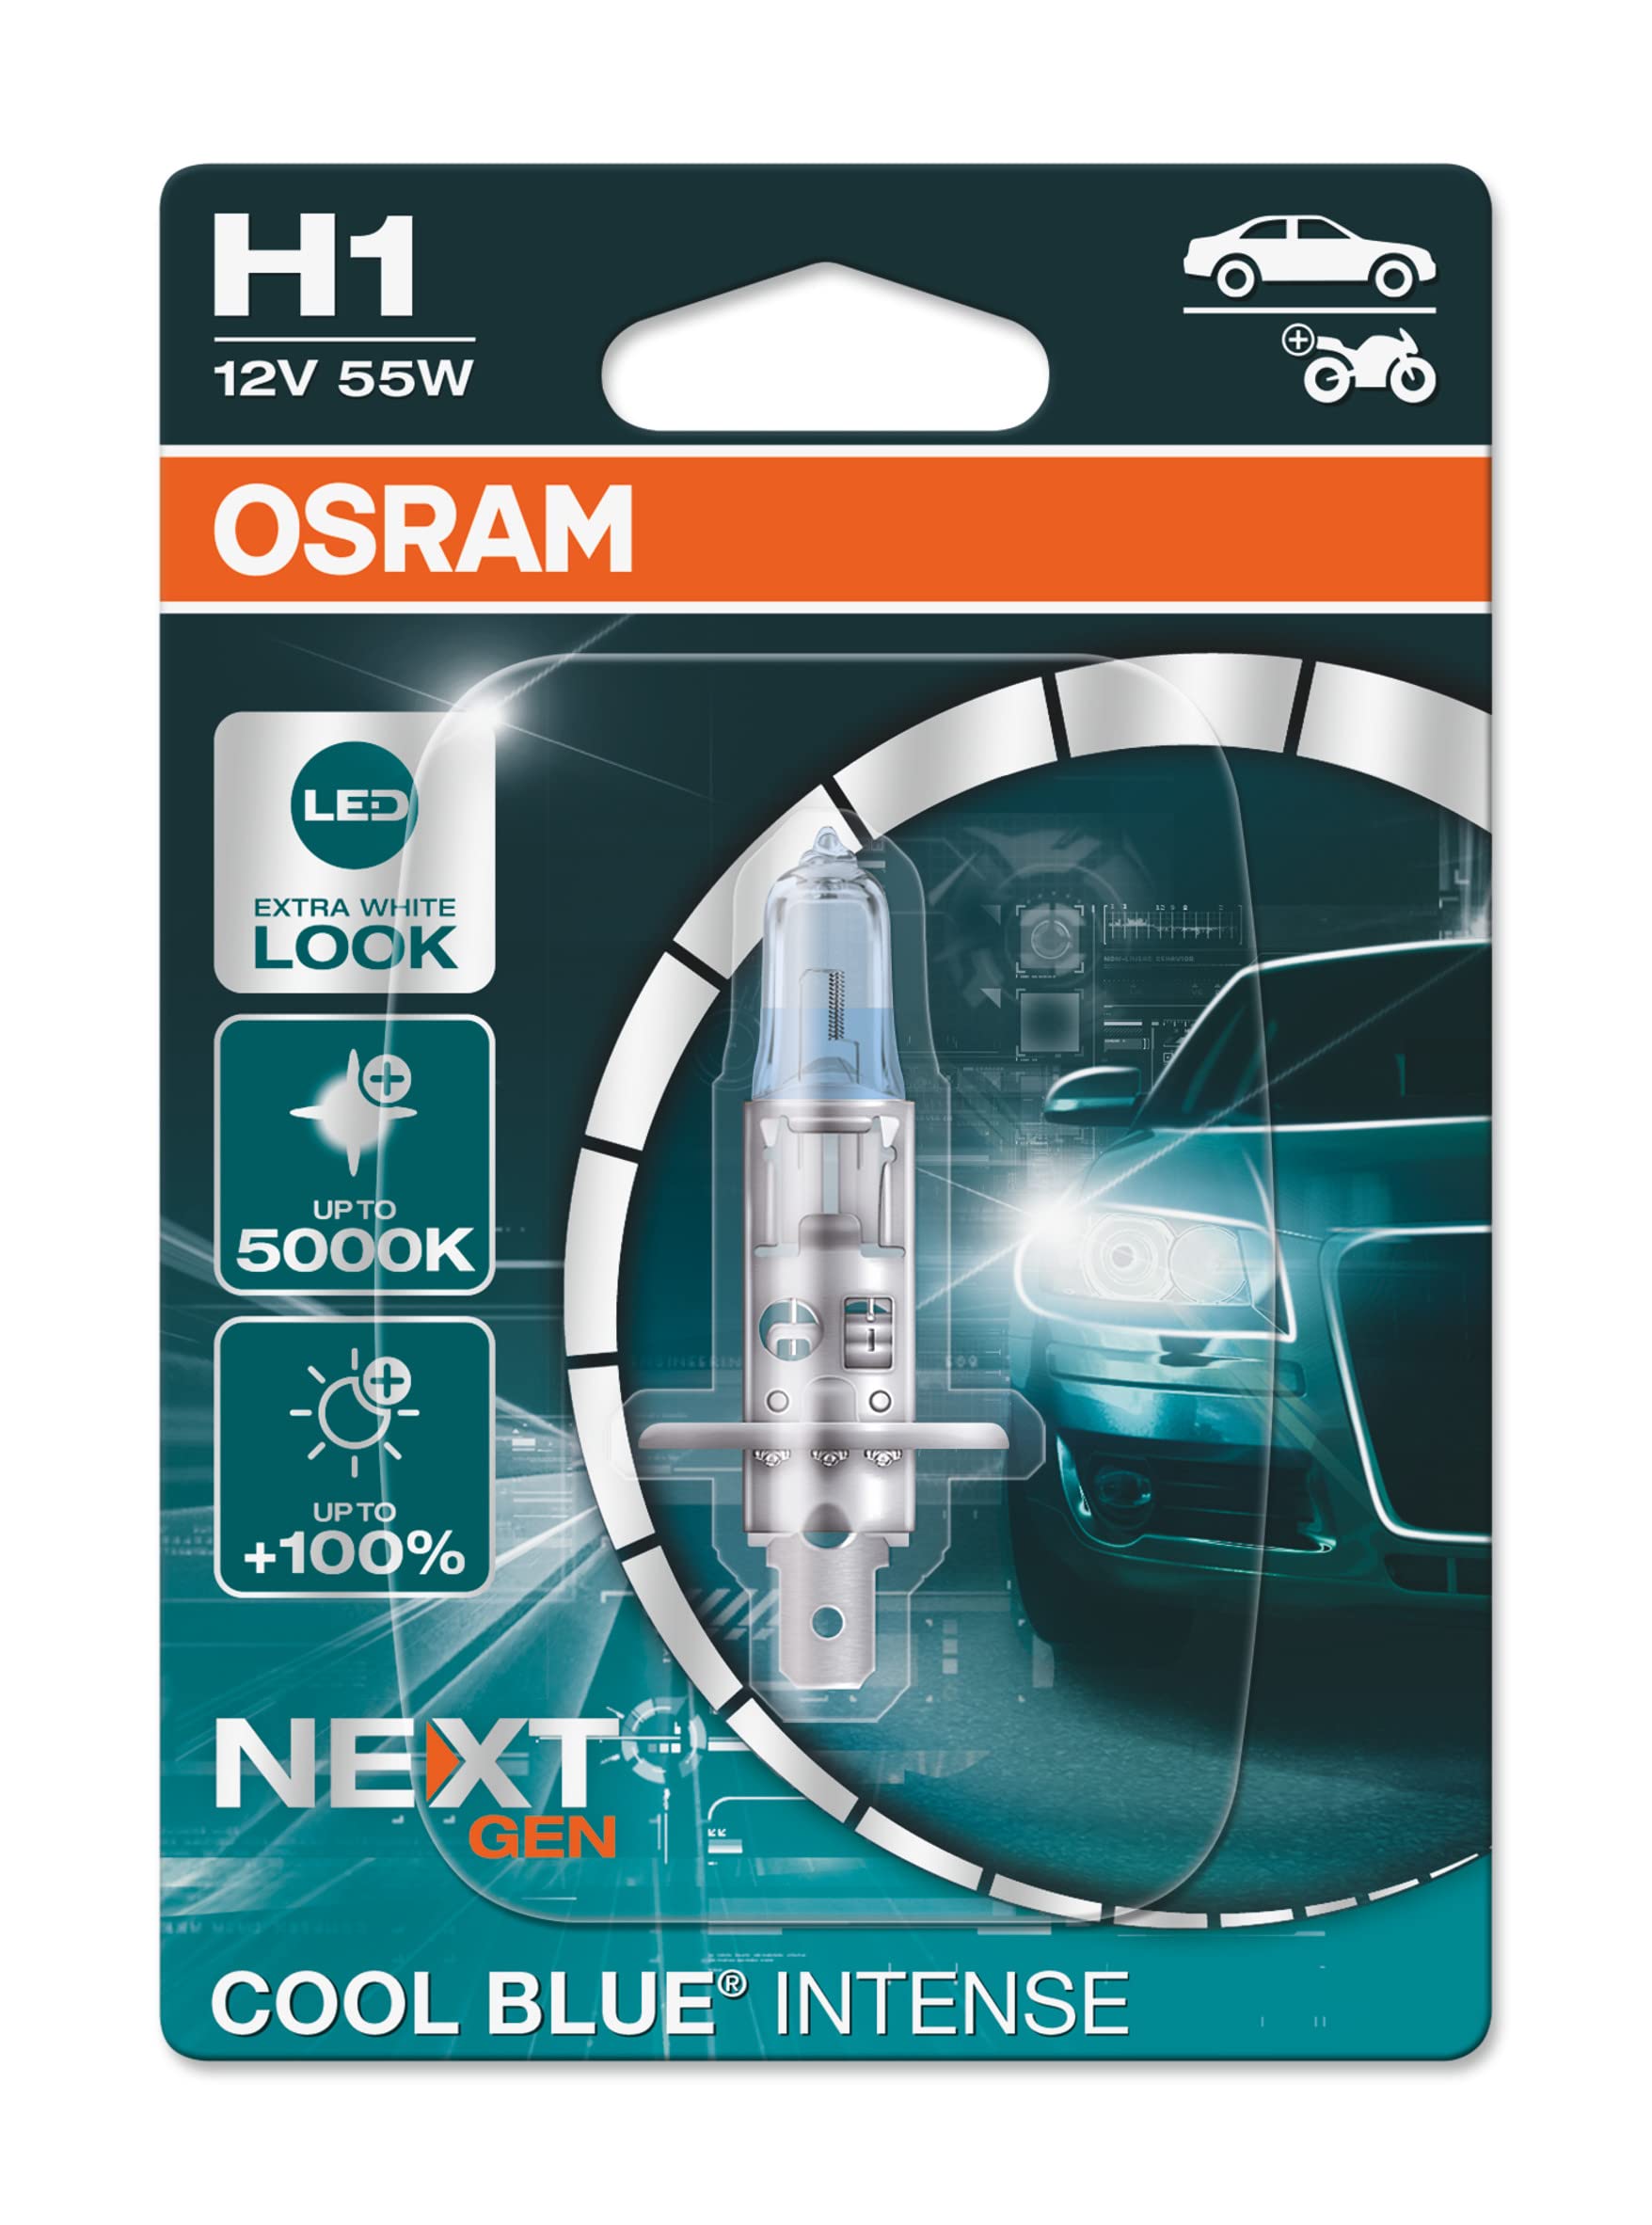 OSRAM COOL BLUE INTENSE H1, 100% mehr Helligkeit, bis zu 5.000K, Halogen-Scheinwerferlampe, LED-Look, Einzelblister (1 Lampe) von Osram